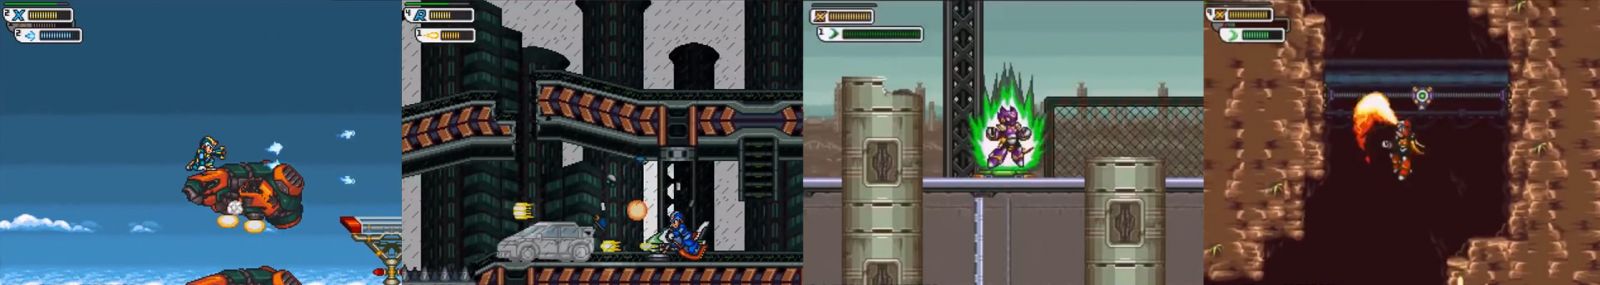 Mega Man x Corrupted con habilidades y veículos nuevos